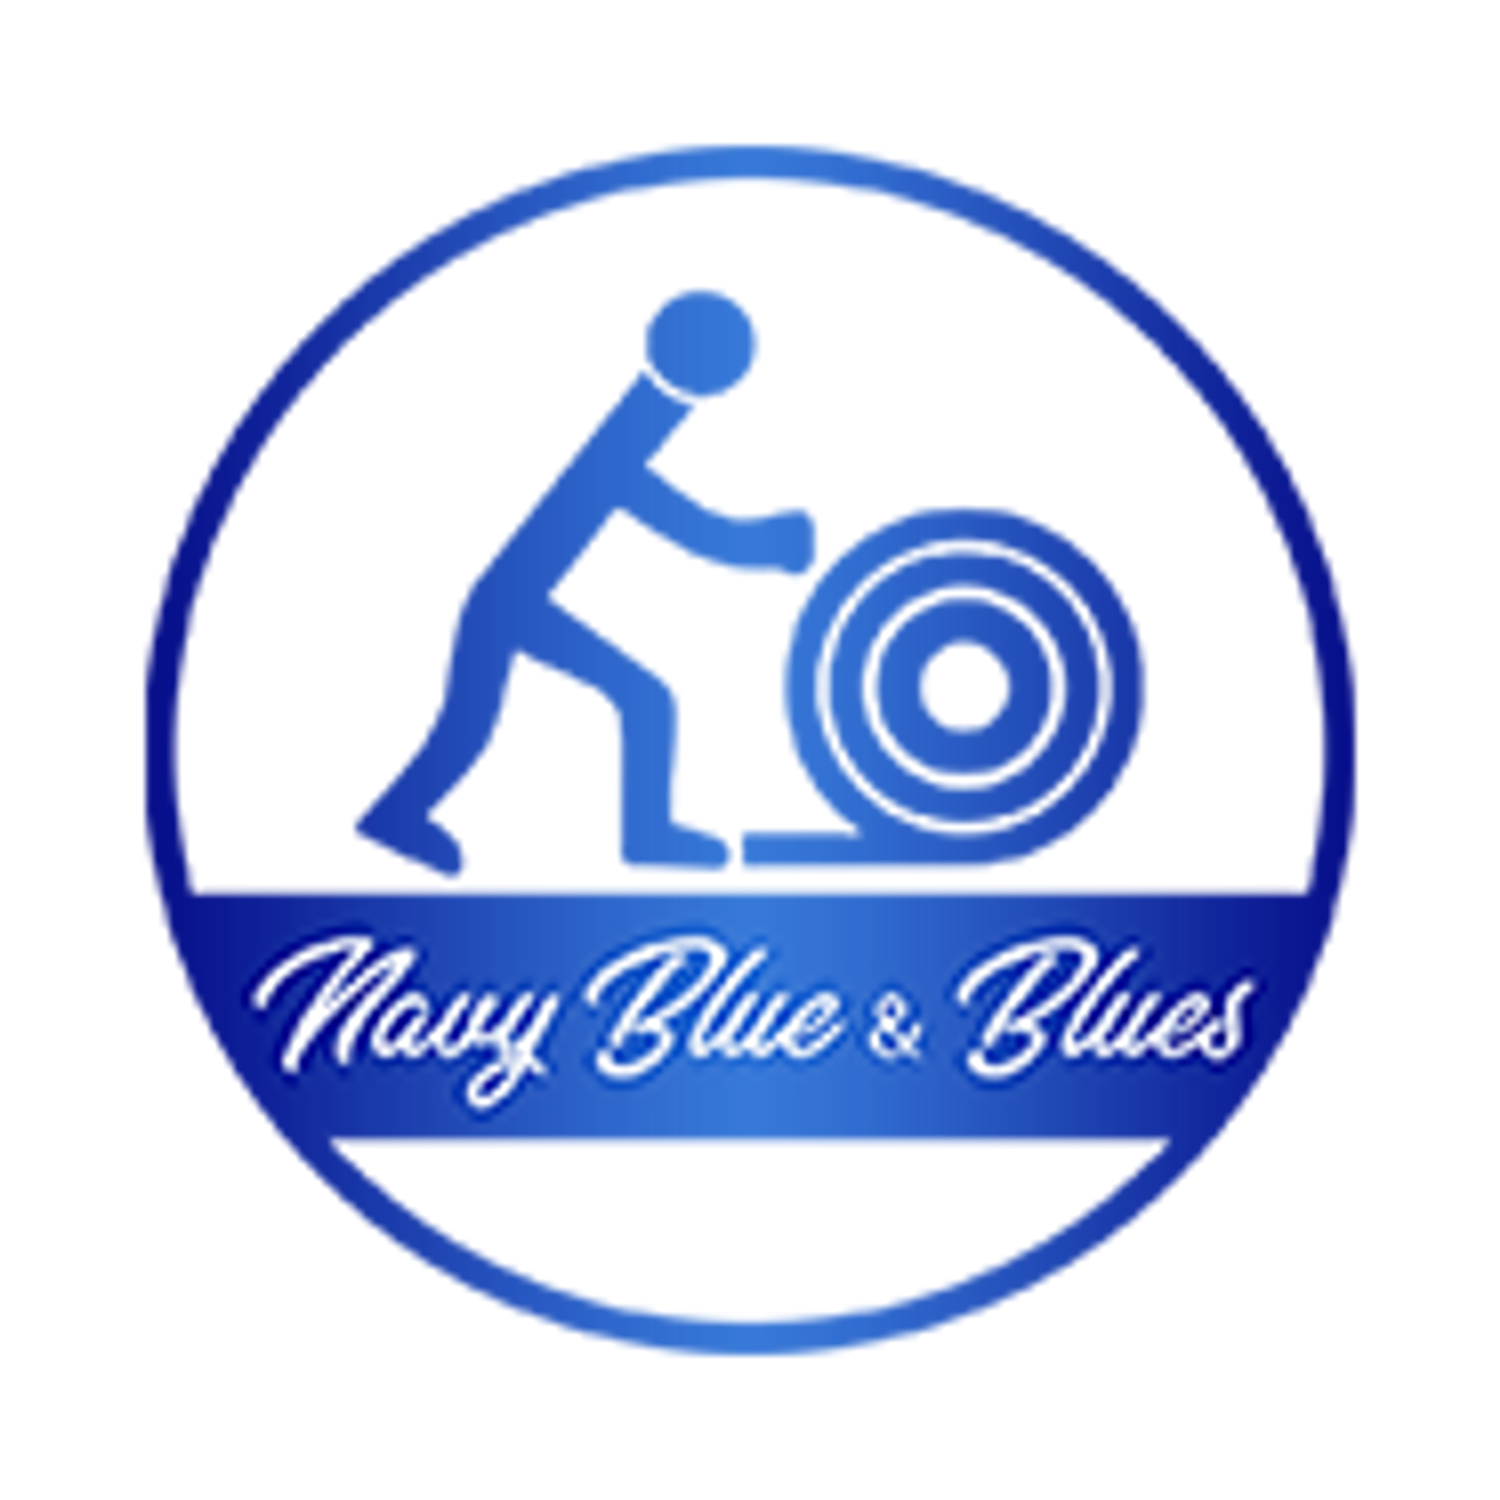 Navy Blue & Blues